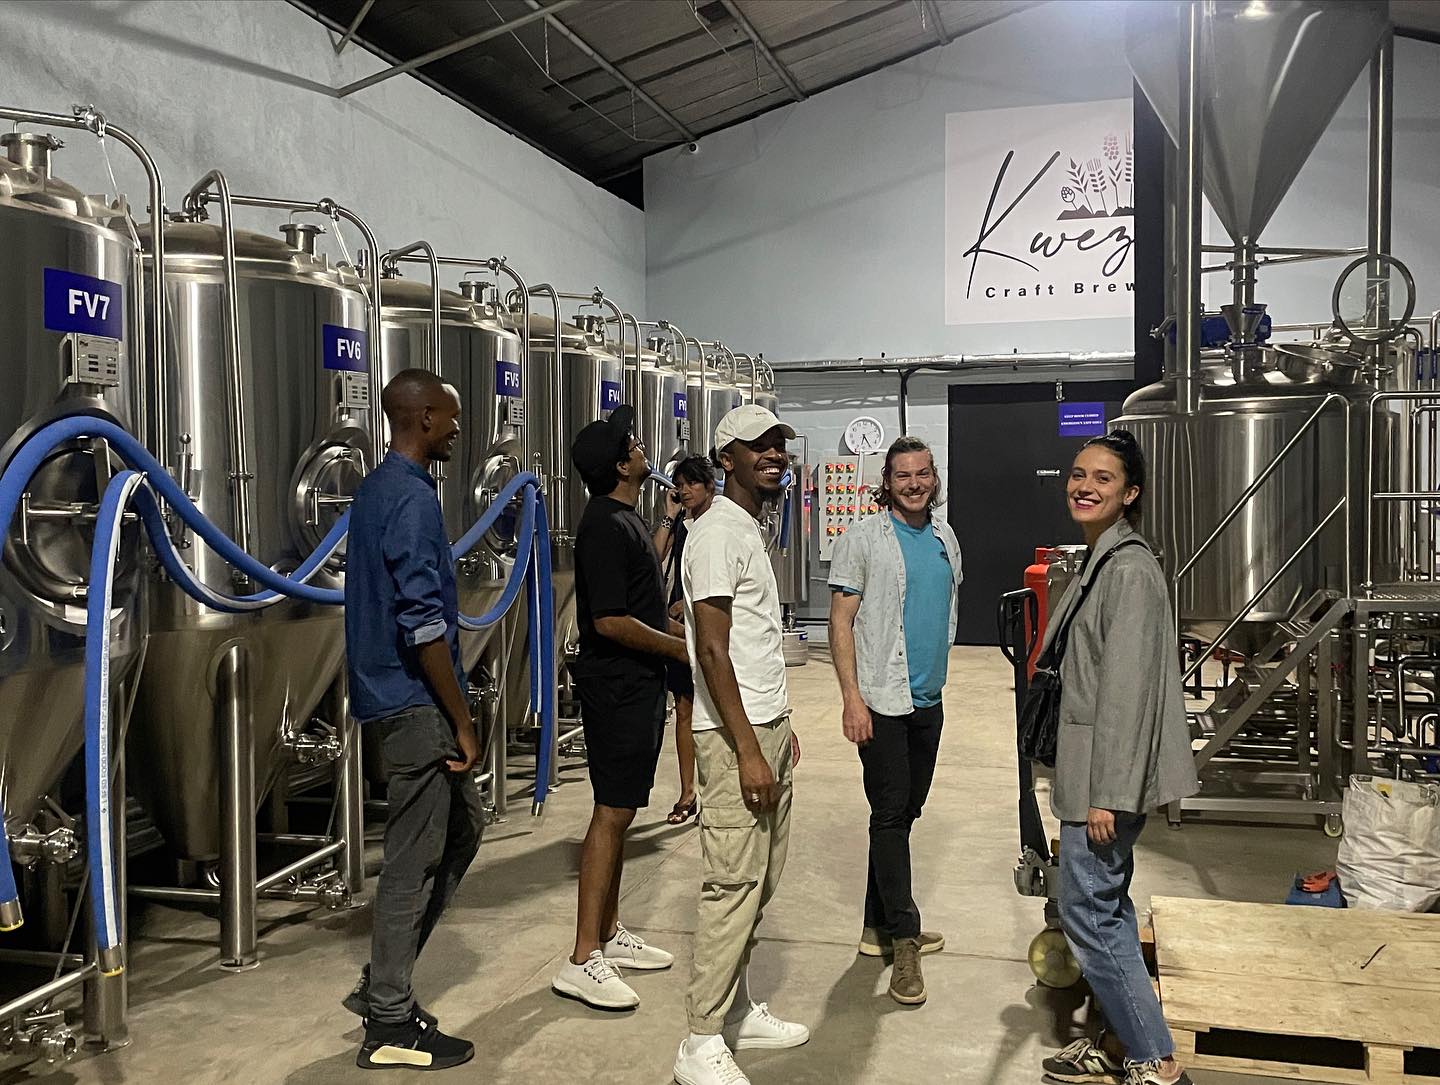 10HL brewery equipment by Tiantai--Kweza Craft Brewery in Rwanda